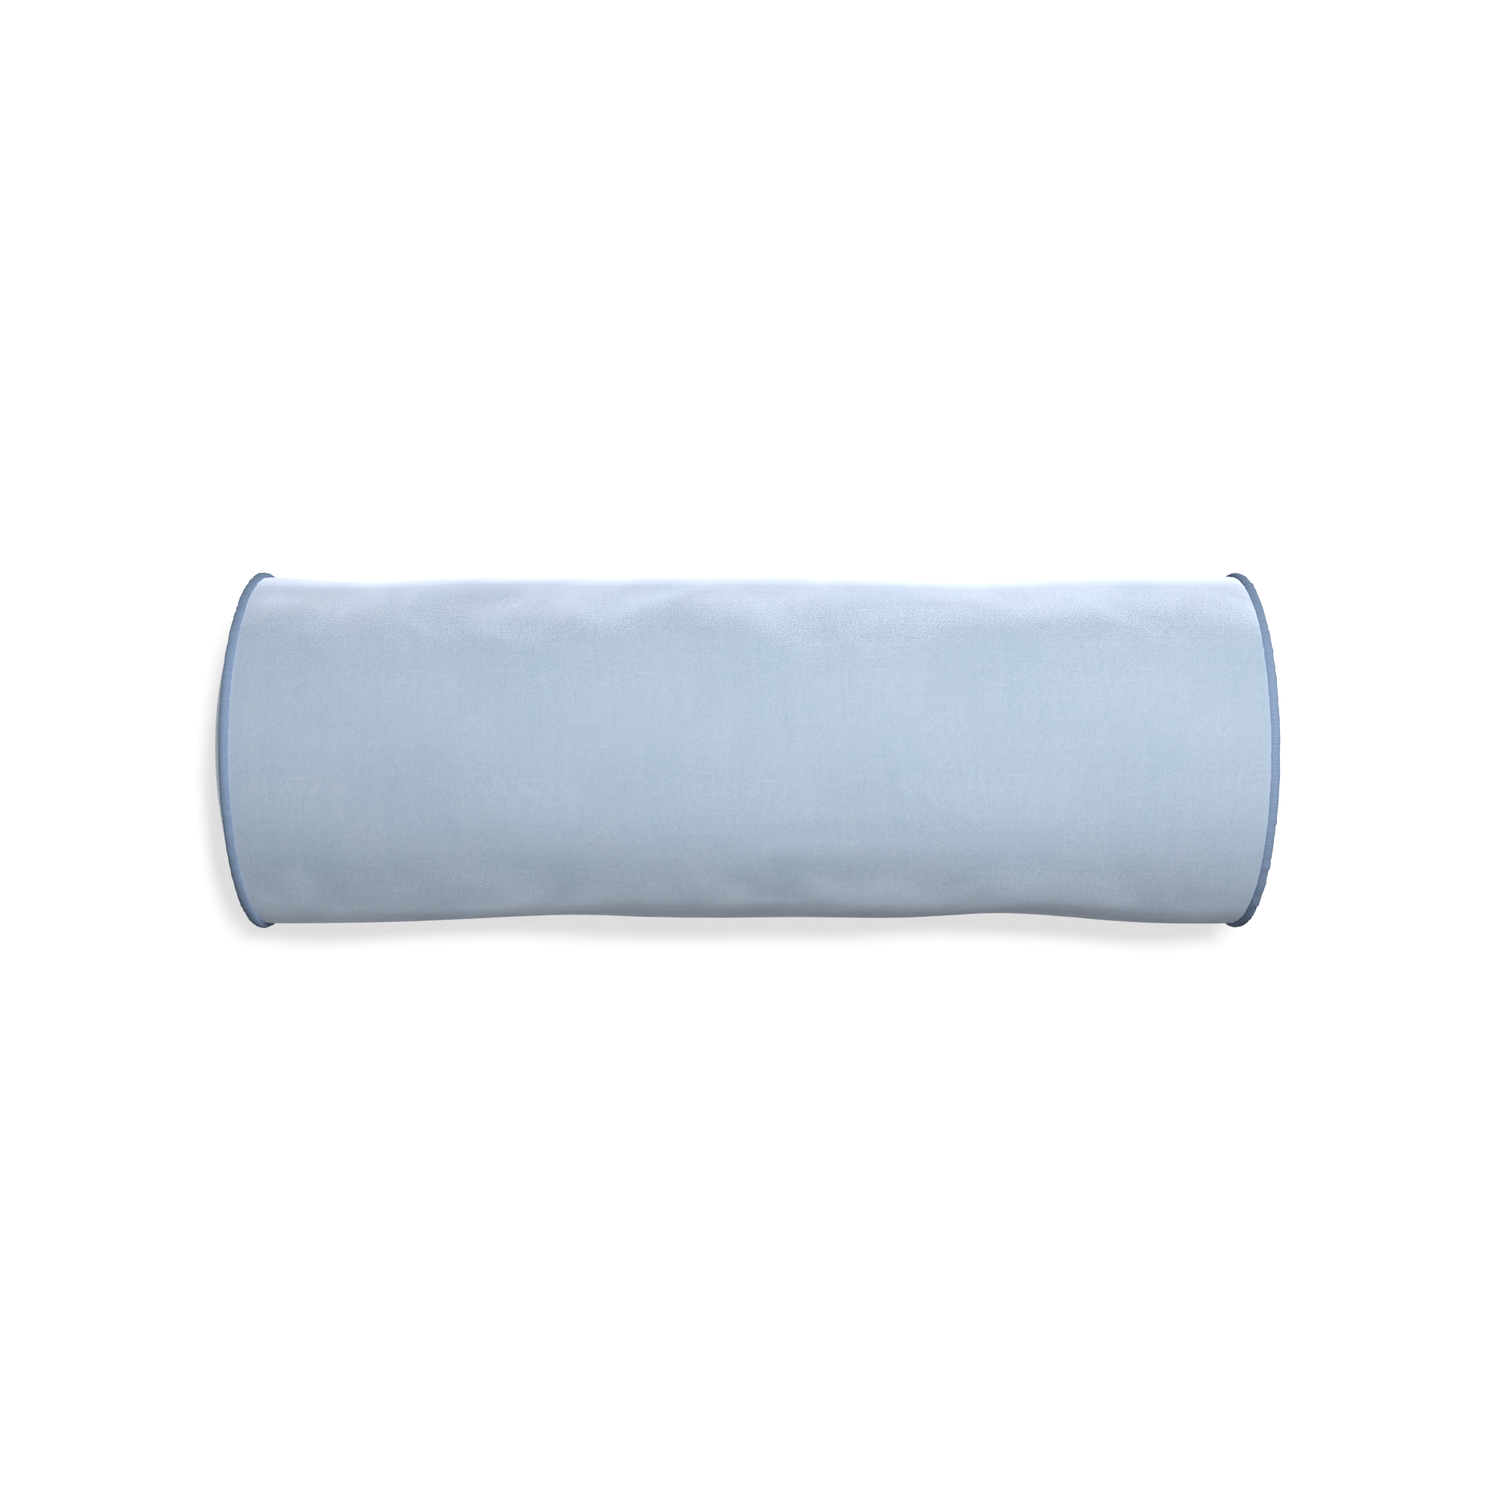 Bolster sky velvet custom pillow with sky piping on white background